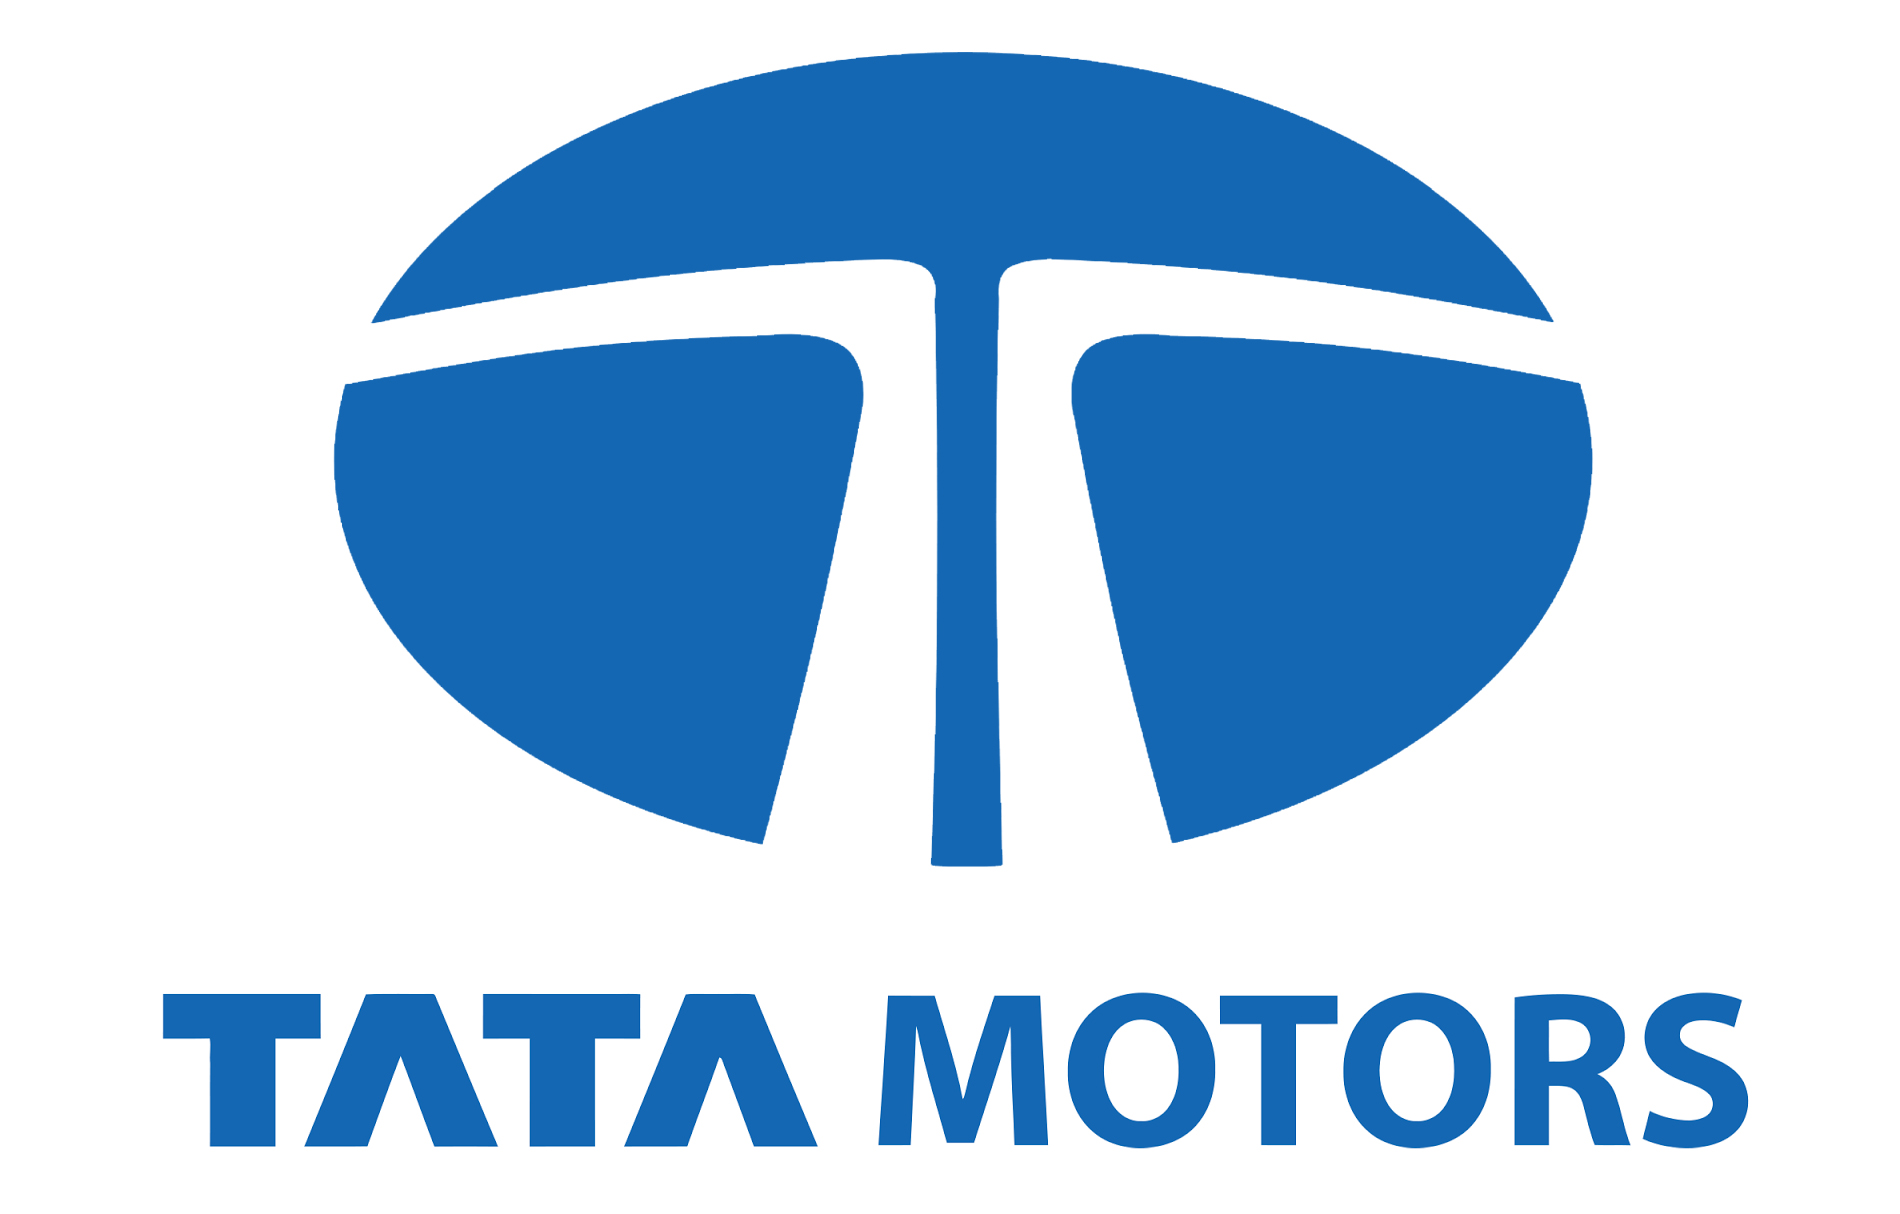 Tata Motors Cars Service Centre - Brijlax Motors Logo